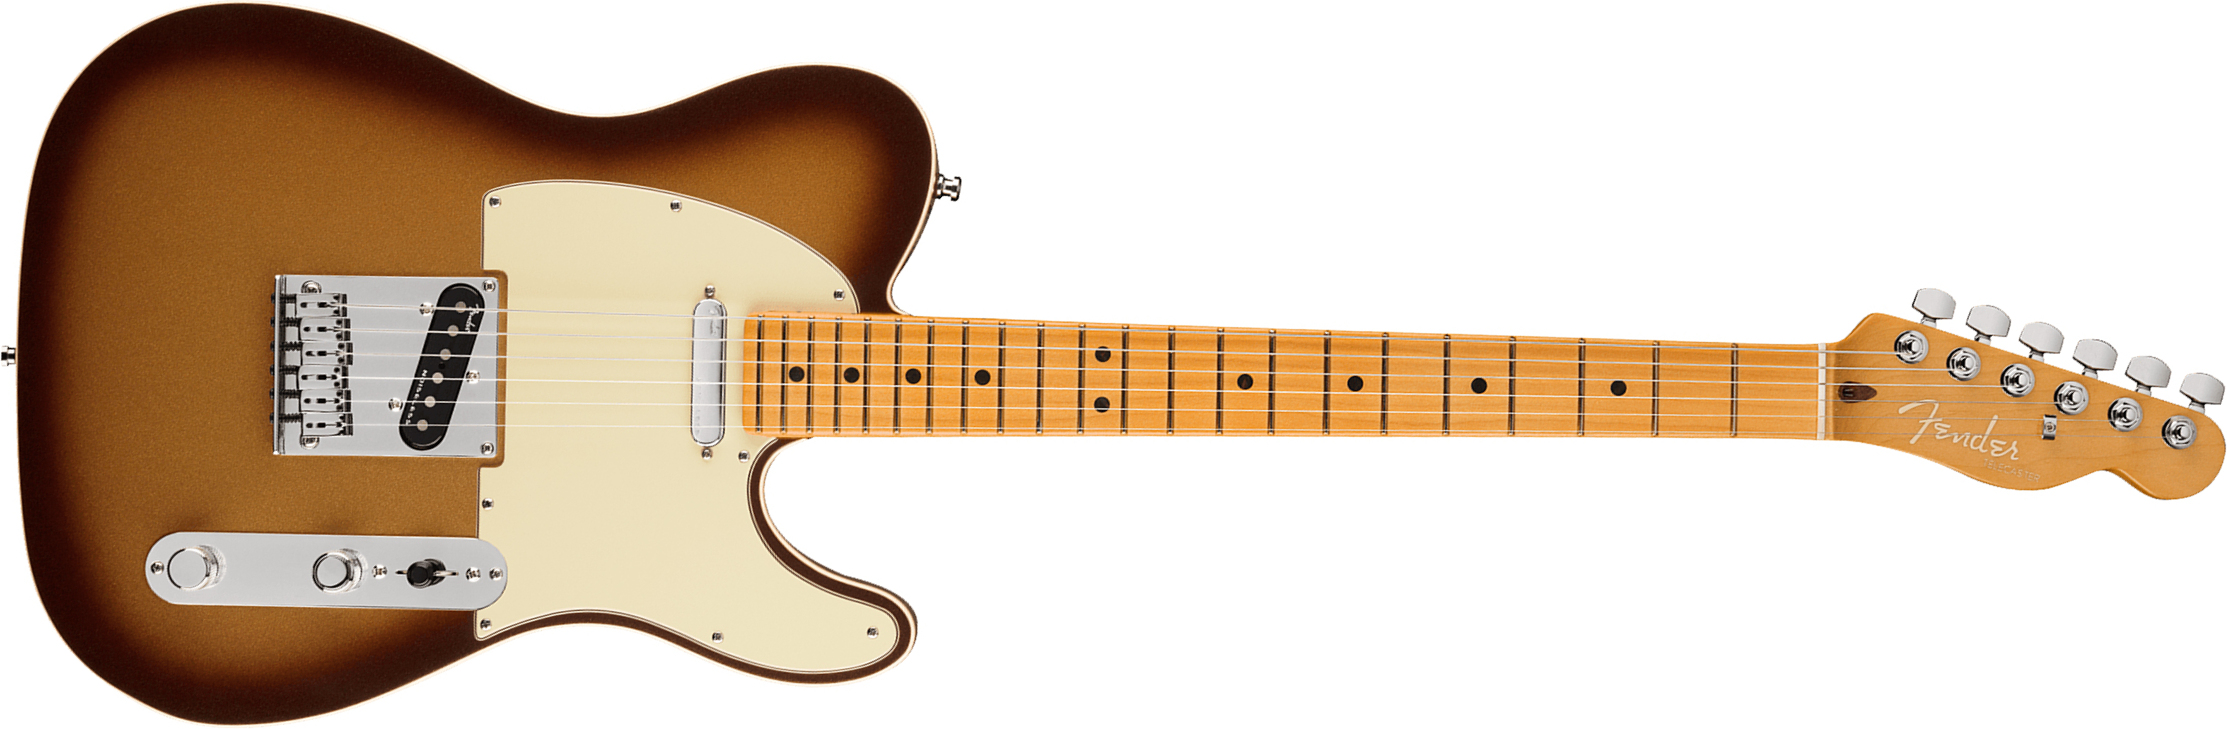 Fender Tele American Ultra 2019 Usa Mn - Mocha Burst - E-Gitarre in Teleform - Main picture